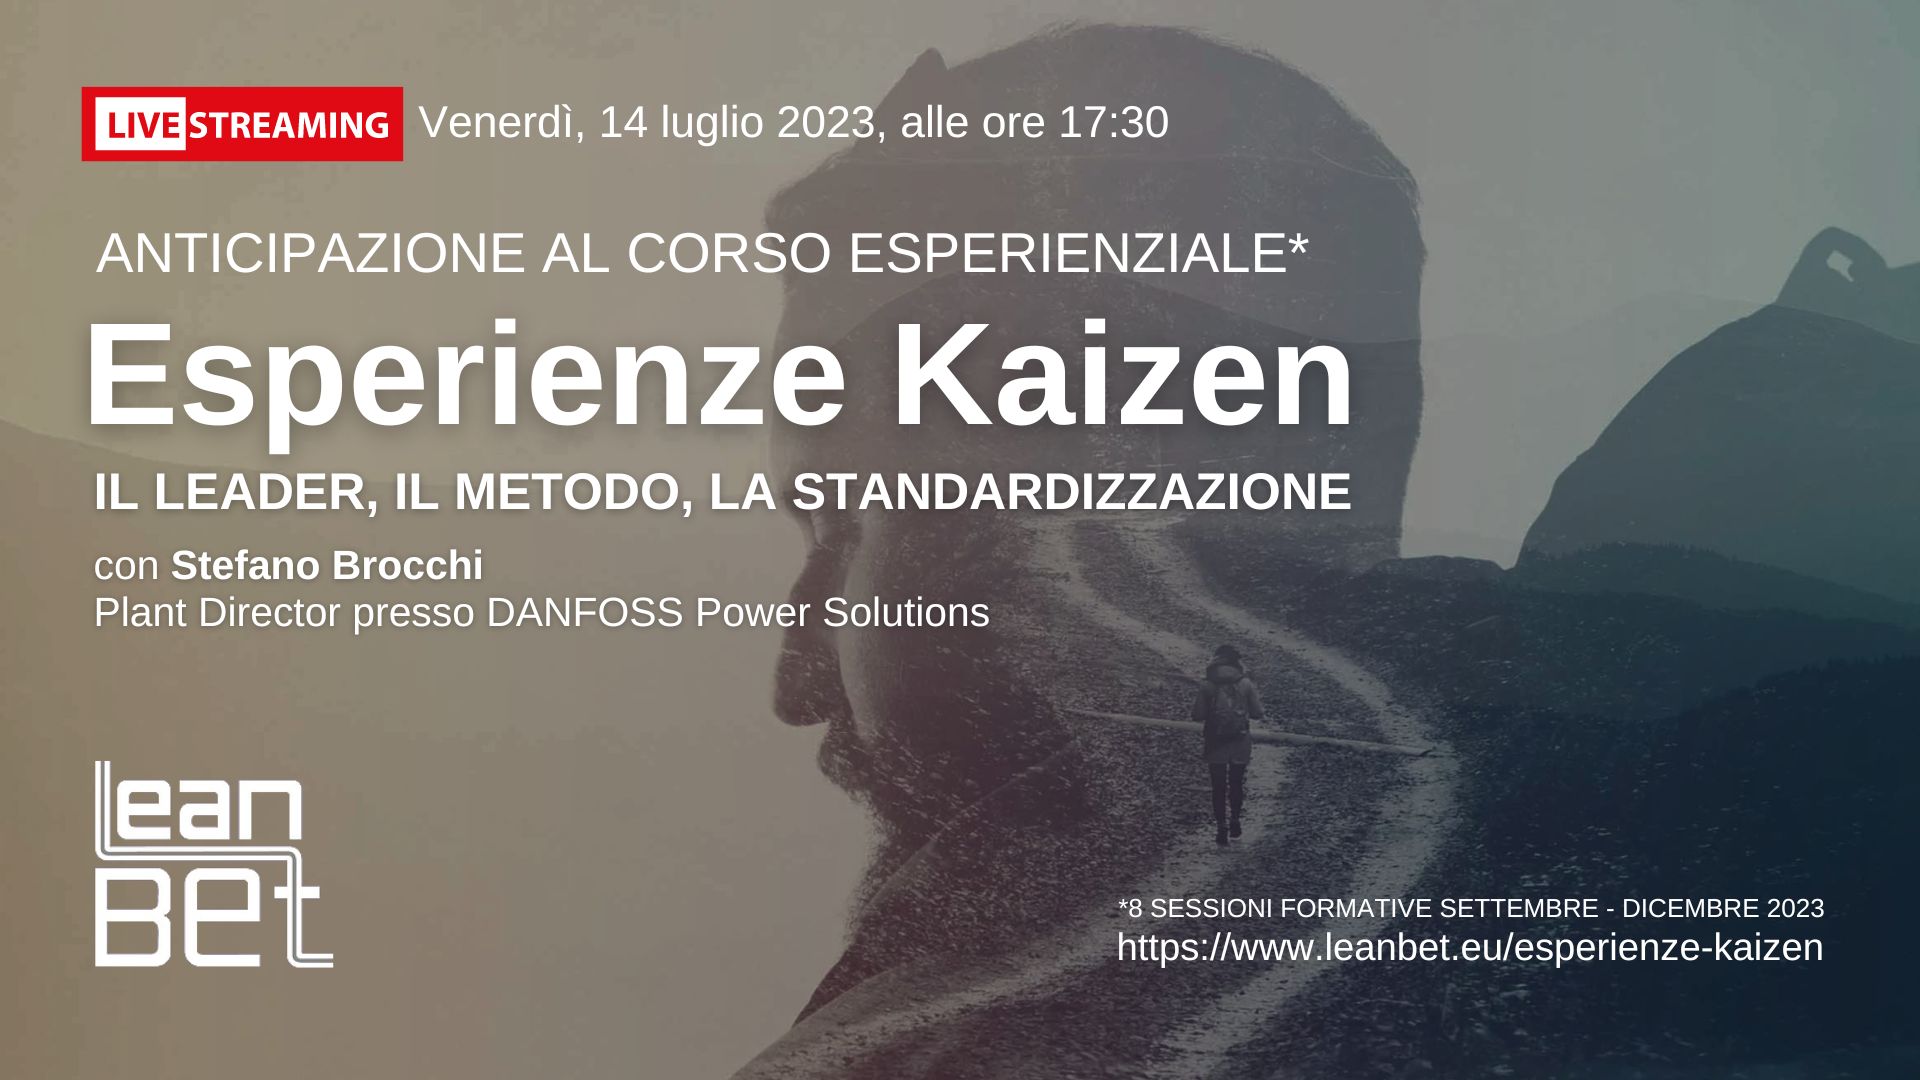 Esperienze Kaizen - Il leader, il metodo, la standardizzazione